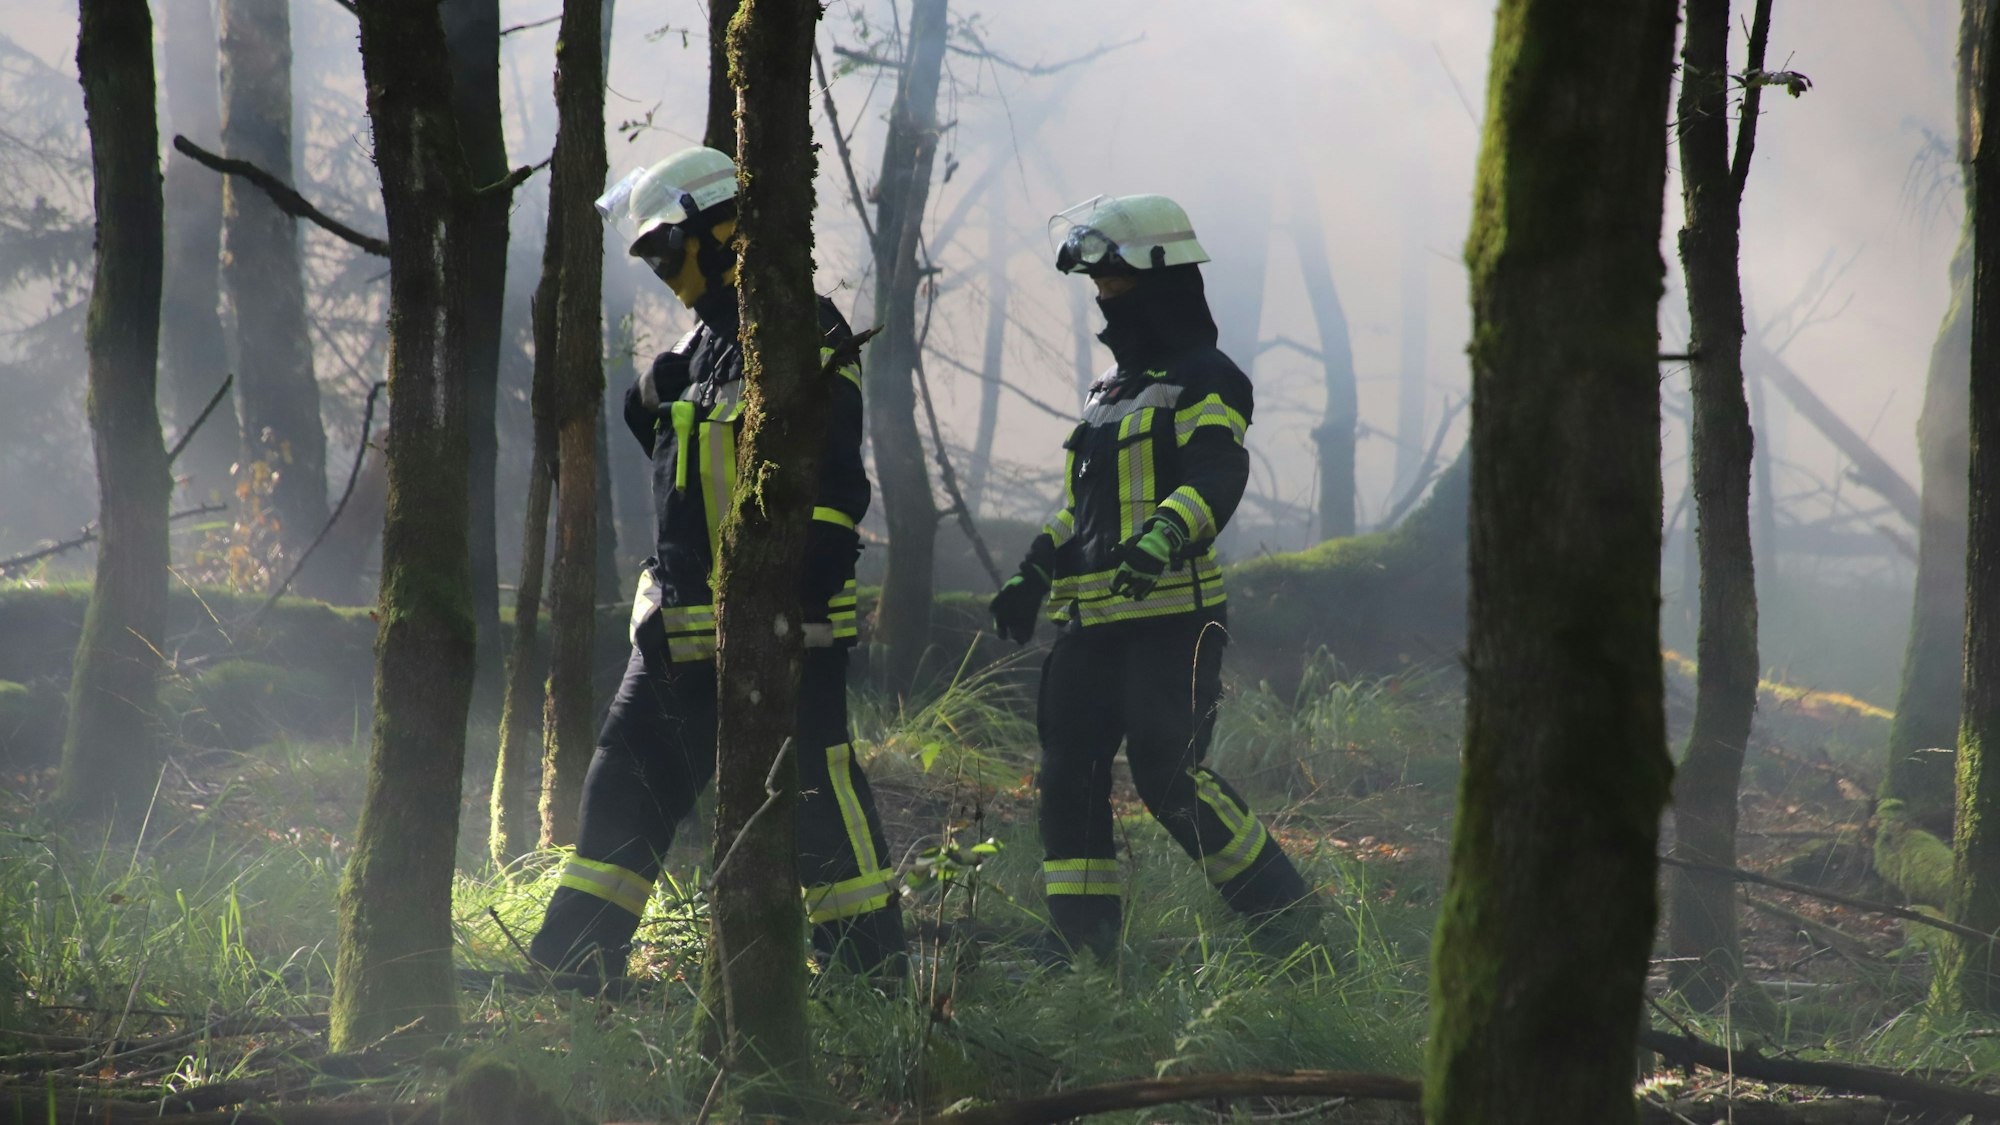 Die Feuerwehren aus Bad Honnef und Unkel, unterstützt von Bonn und Königswinter haben eine große Waldbrandübung gemeinsam mit dem Technsichen Hilfswerk (THW) am Asberg durchgeführt, als länderübergreifende Kooperation. Trupps, unter anderem mit Löschrucksäcken, waren an vorderster Front. Hier gehen ein Feuerwehrmann (links) und eine Feuerwehrfrau durch die Rauchschwaden im Wald.